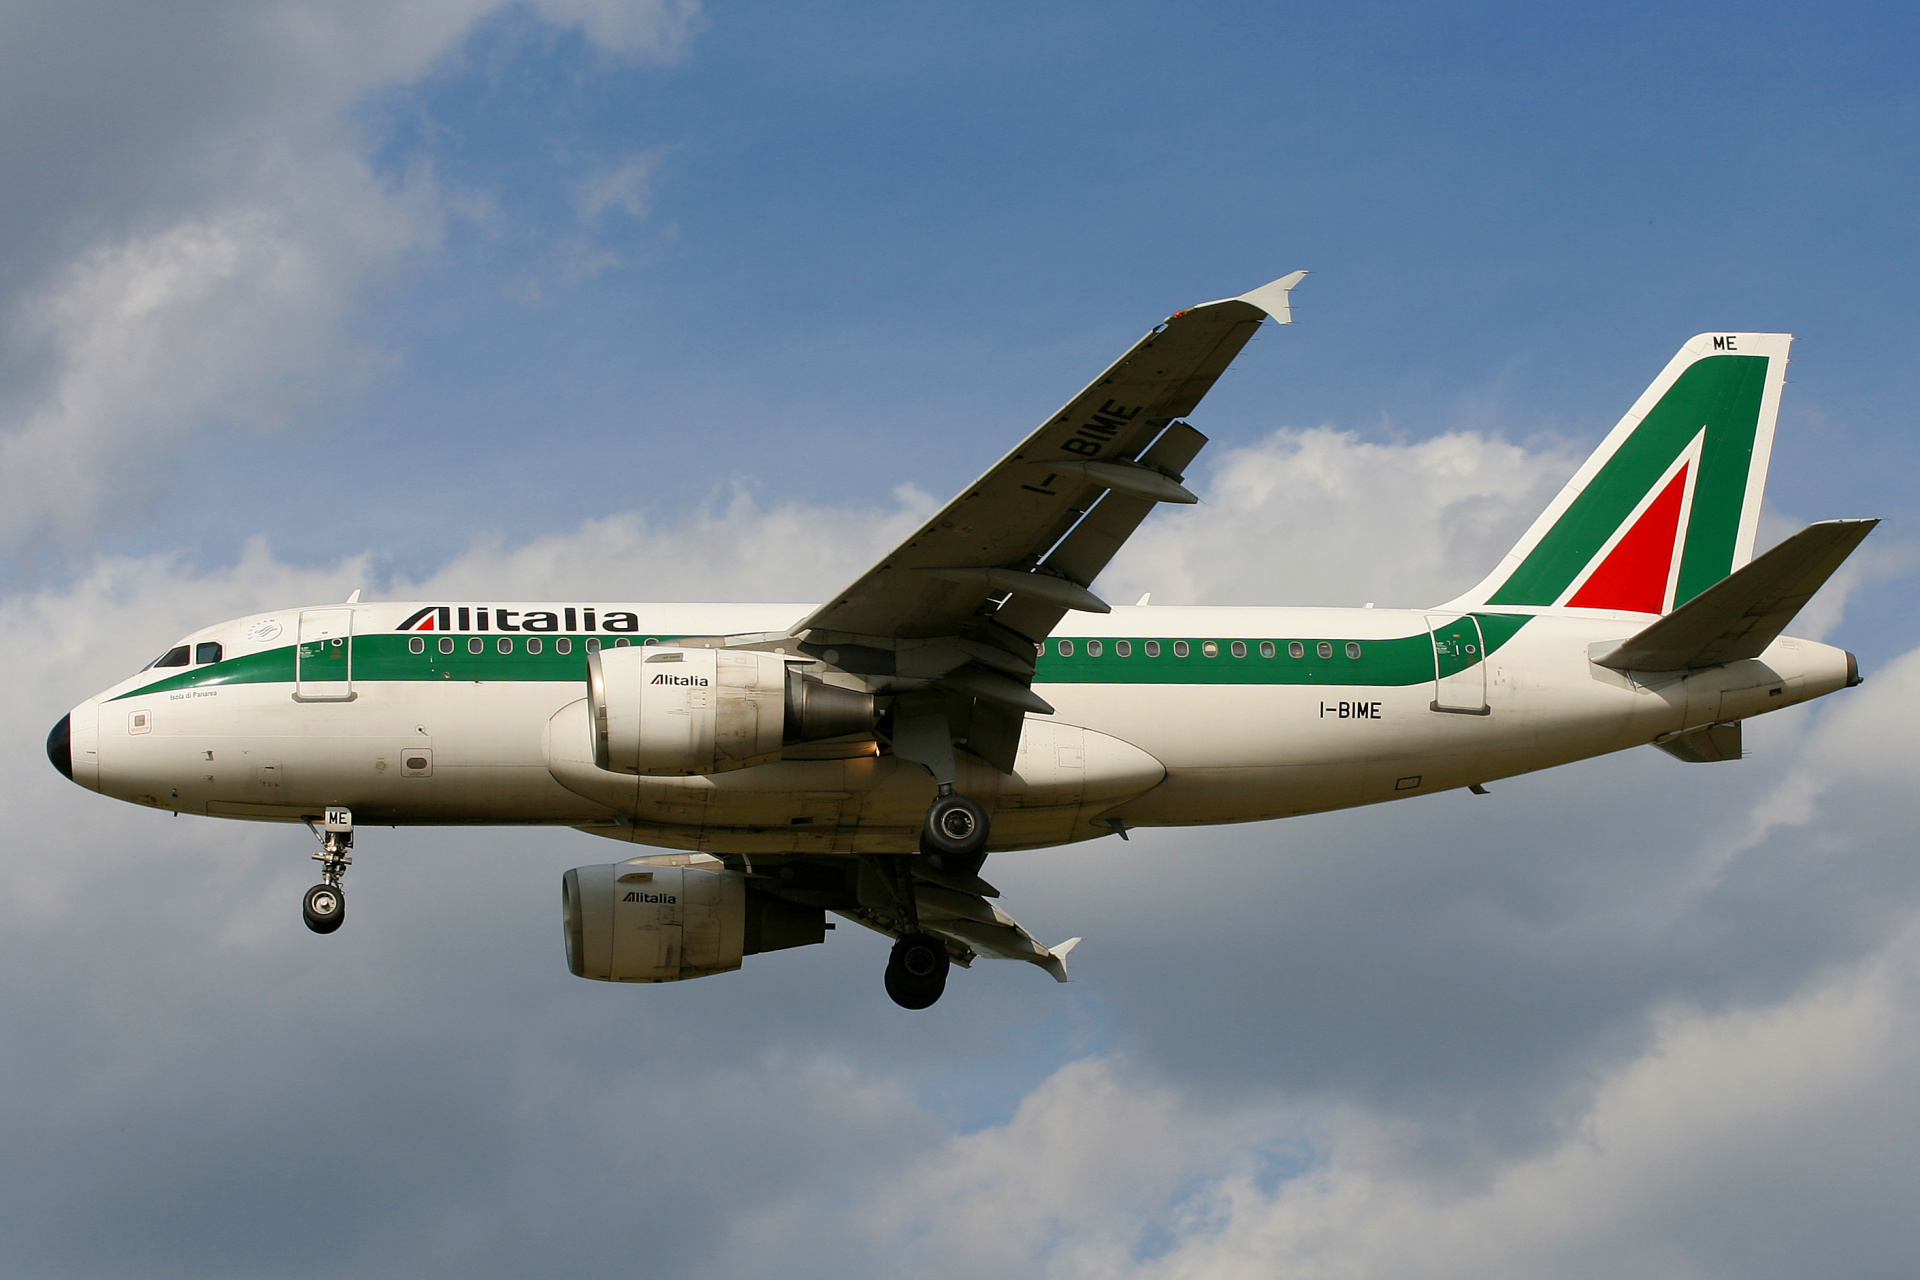 I-BIME (Aircraft » EPWA Spotting » Airbus A319-100 » Alitalia)